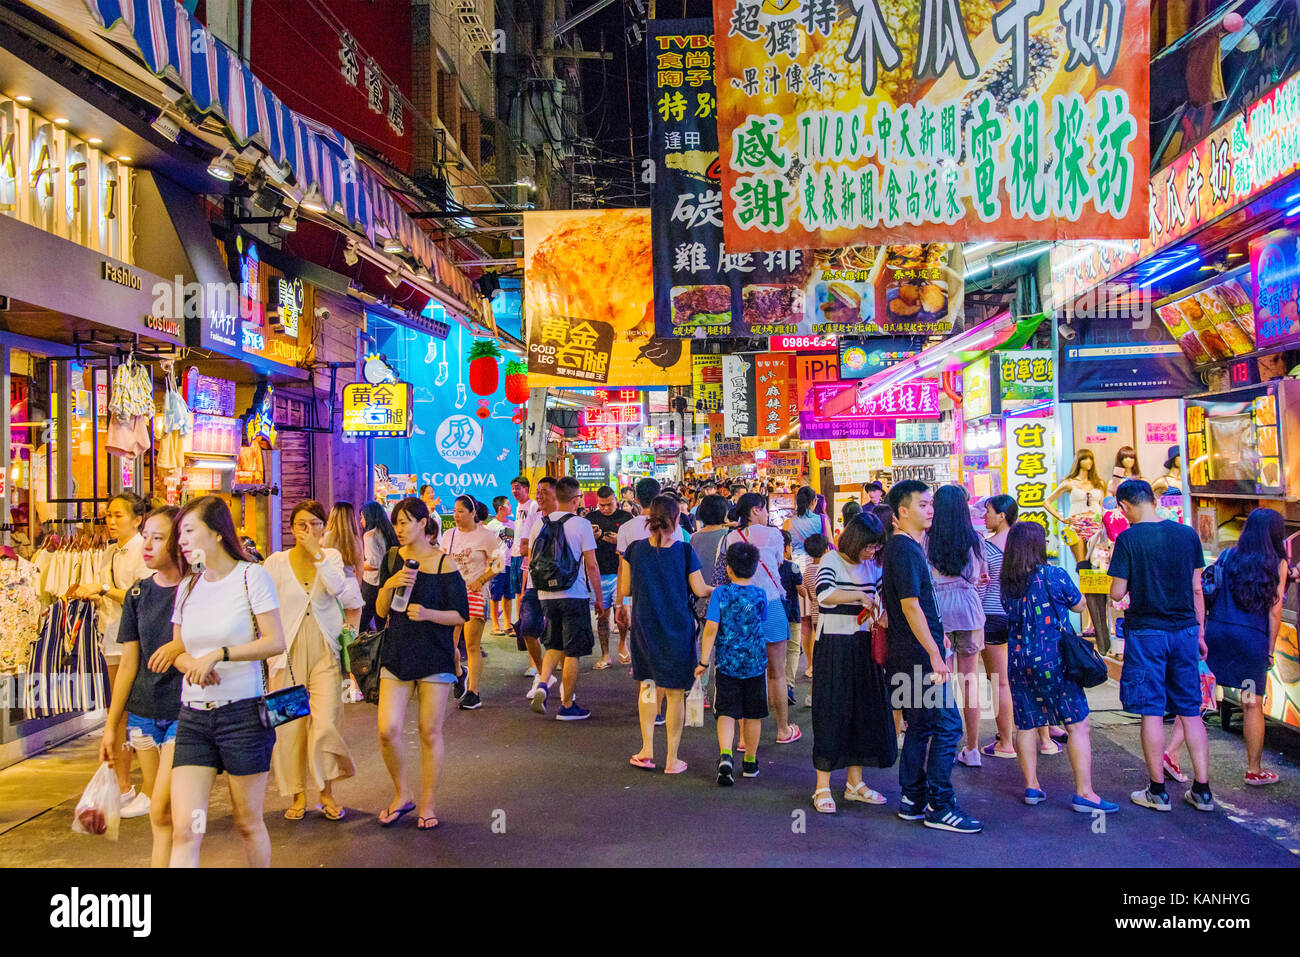 Taichung, Taiwan - 18 luglio: questa è una strada fengjia notte di mercato il più grande mercato notturno di Taiwan che è frequentata da escursionisti e i locali sul ju Foto Stock